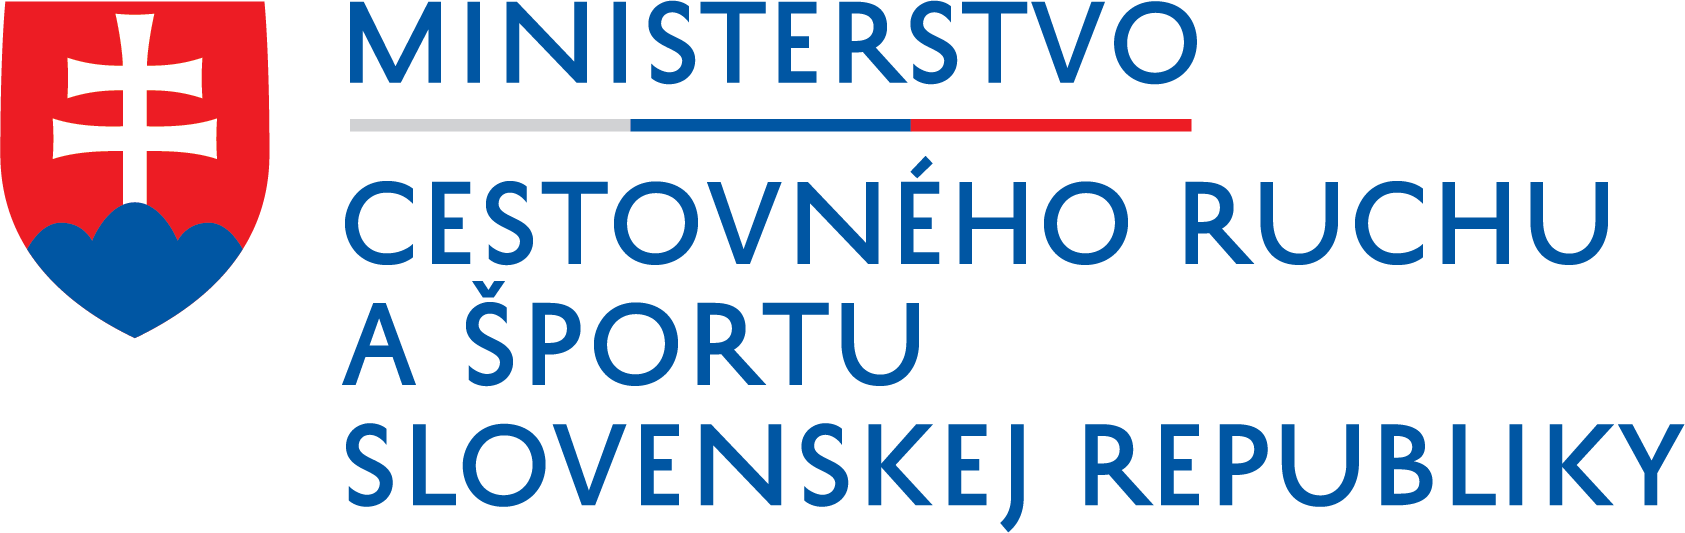 Ministerstvo Cestovného ruchu a športu Slovenskej Republiky